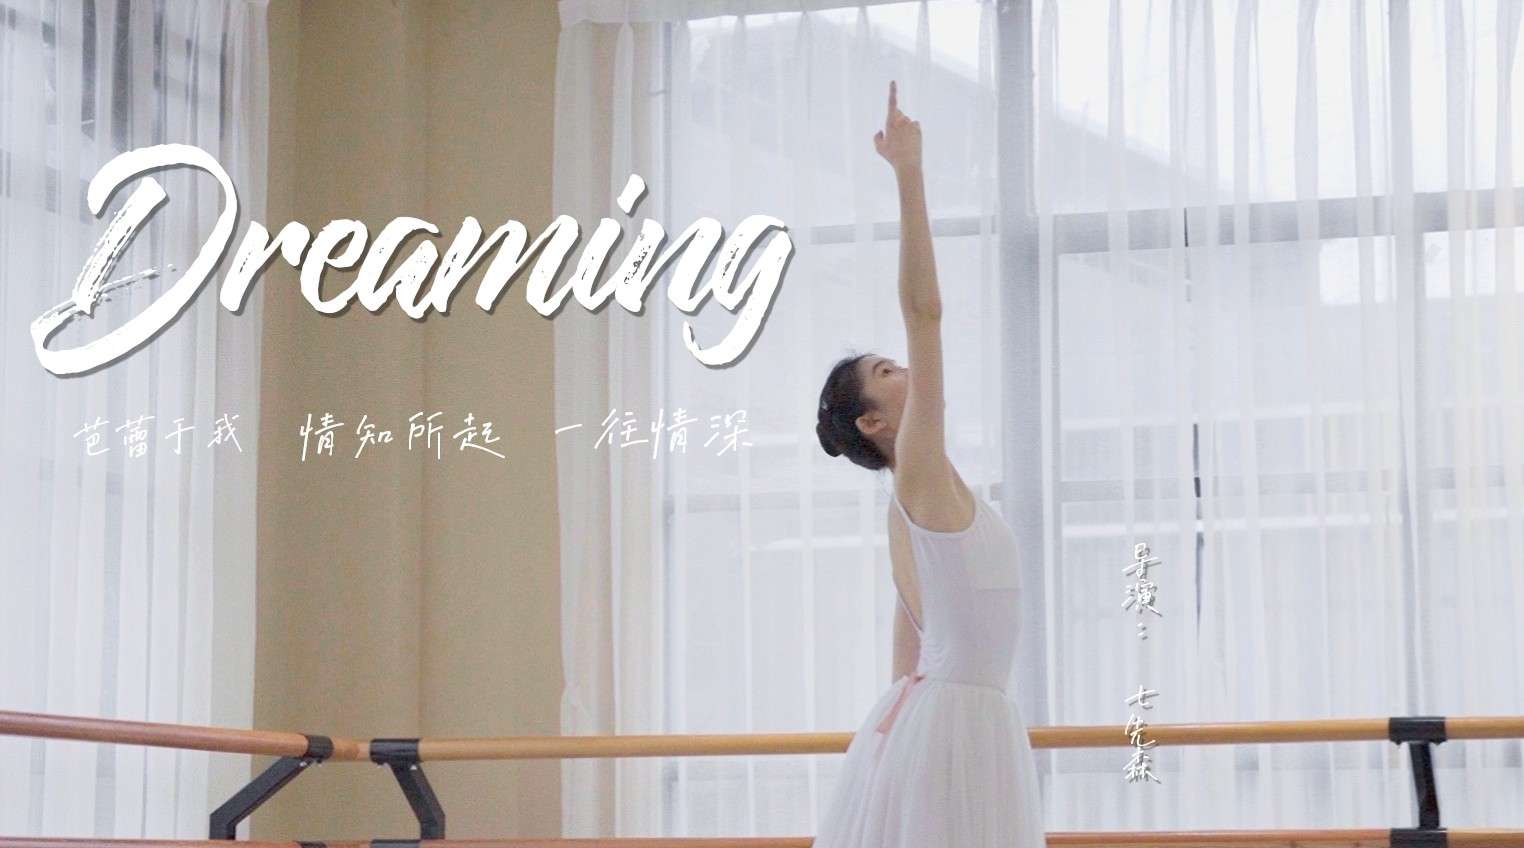 【芭蕾短片】Dream-ing | 一个非专业舞蹈女孩的成长